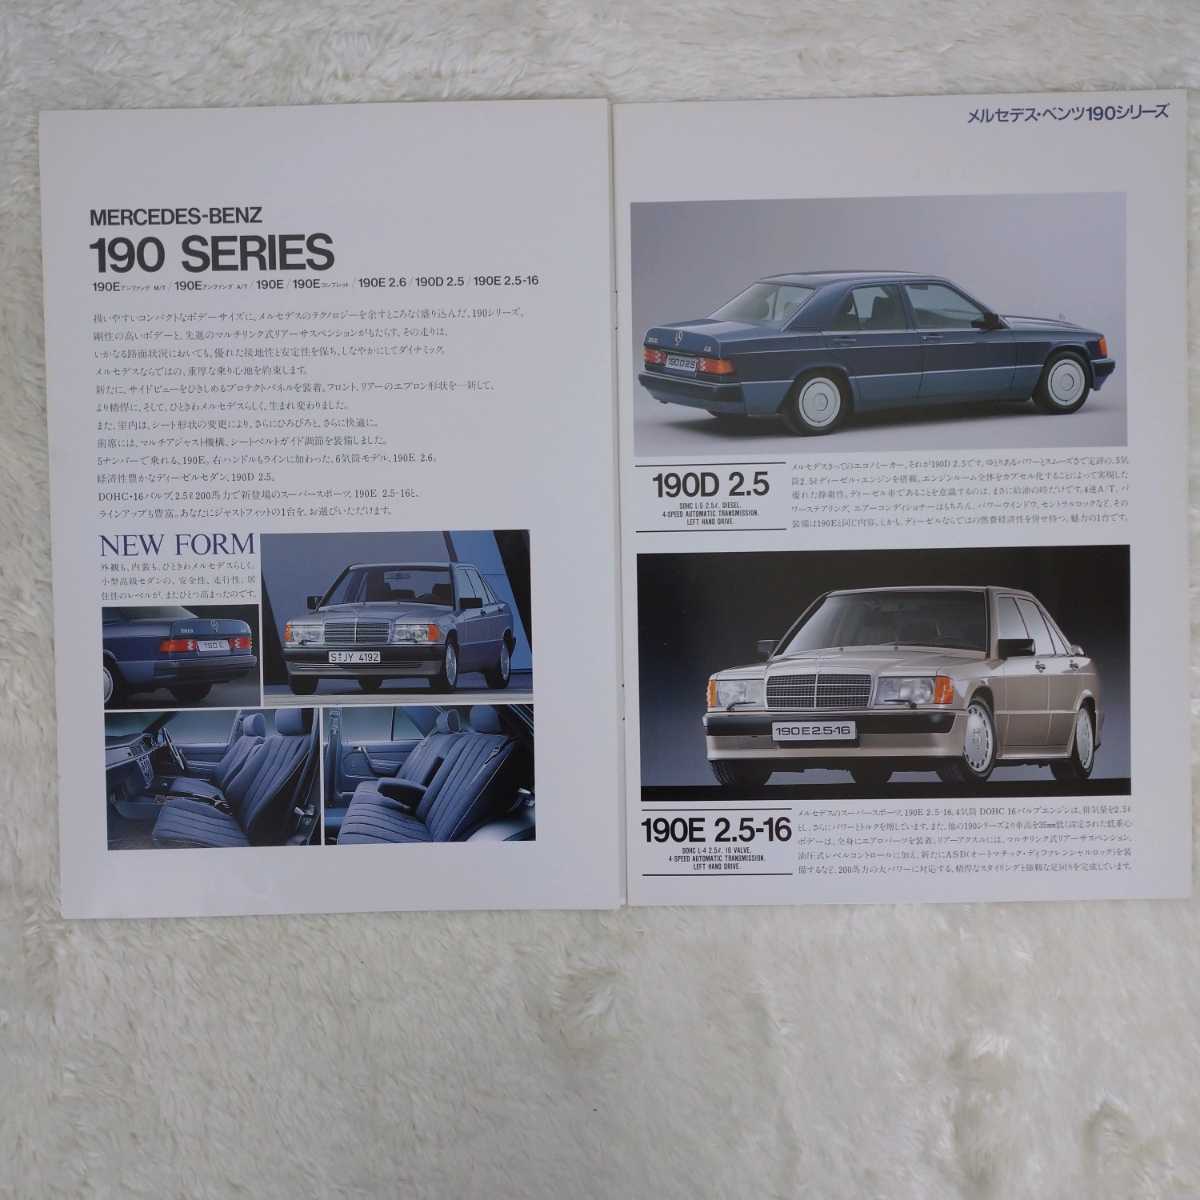 【旧車カタログ】メルセデス ベンツ 1988年 190シリーズ ミディアム クラス S クラス カタログ MERCEDES-BEN 190E ヤナセ _画像3